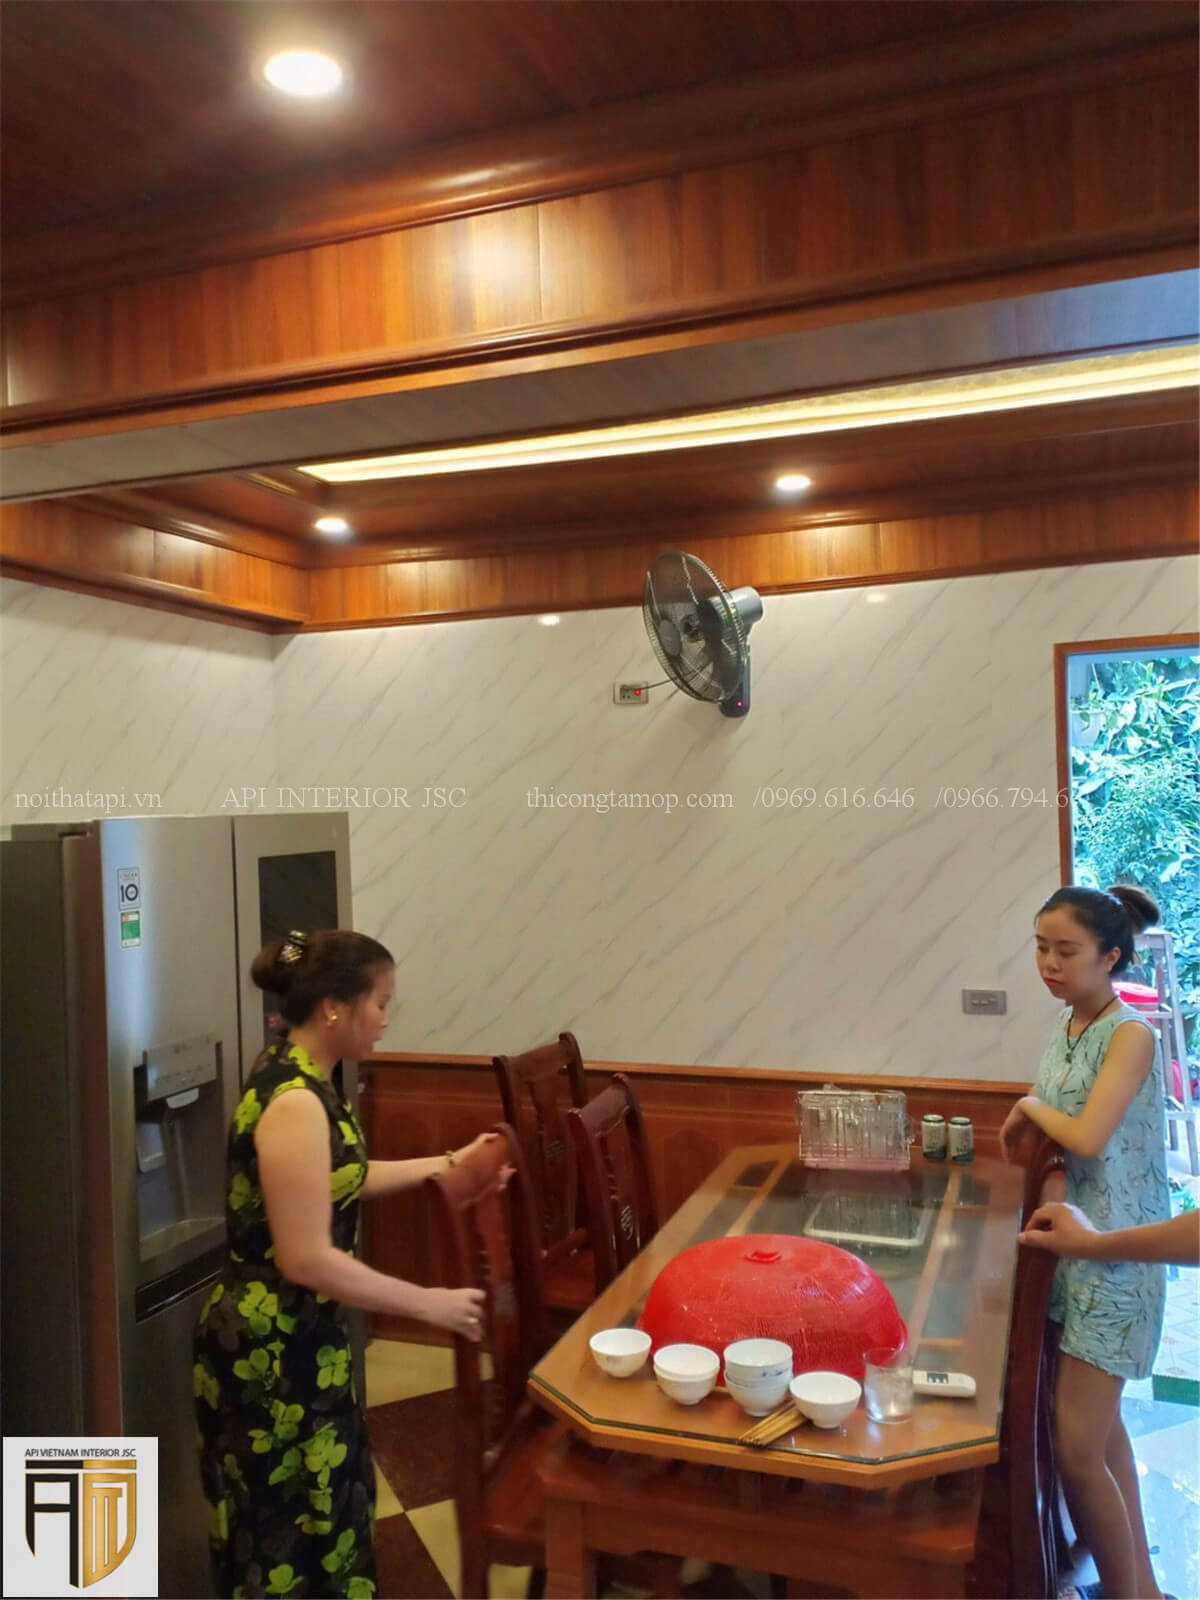 Thi công thiết kế phòng bếp bằng tấm ốp tường PVC - 3